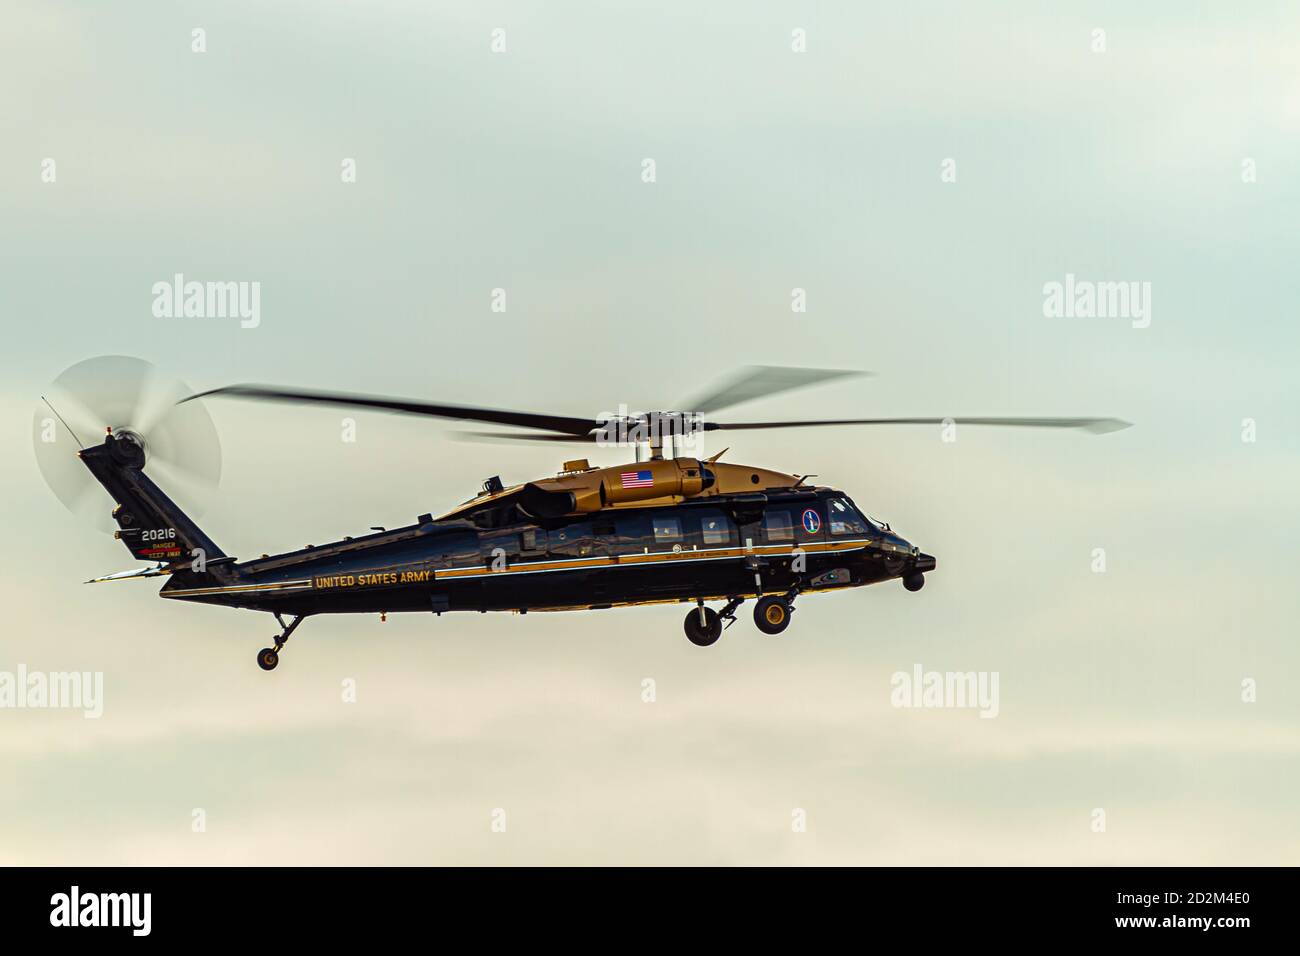 Washington DC, États-Unis 10/03/2020: Un hélicoptère à quatre pales Sikorsky VH-60M Golden TOP Black Hawk (UH-60M amélioré) appartenant à l'armée des États-Unis est en t Banque D'Images